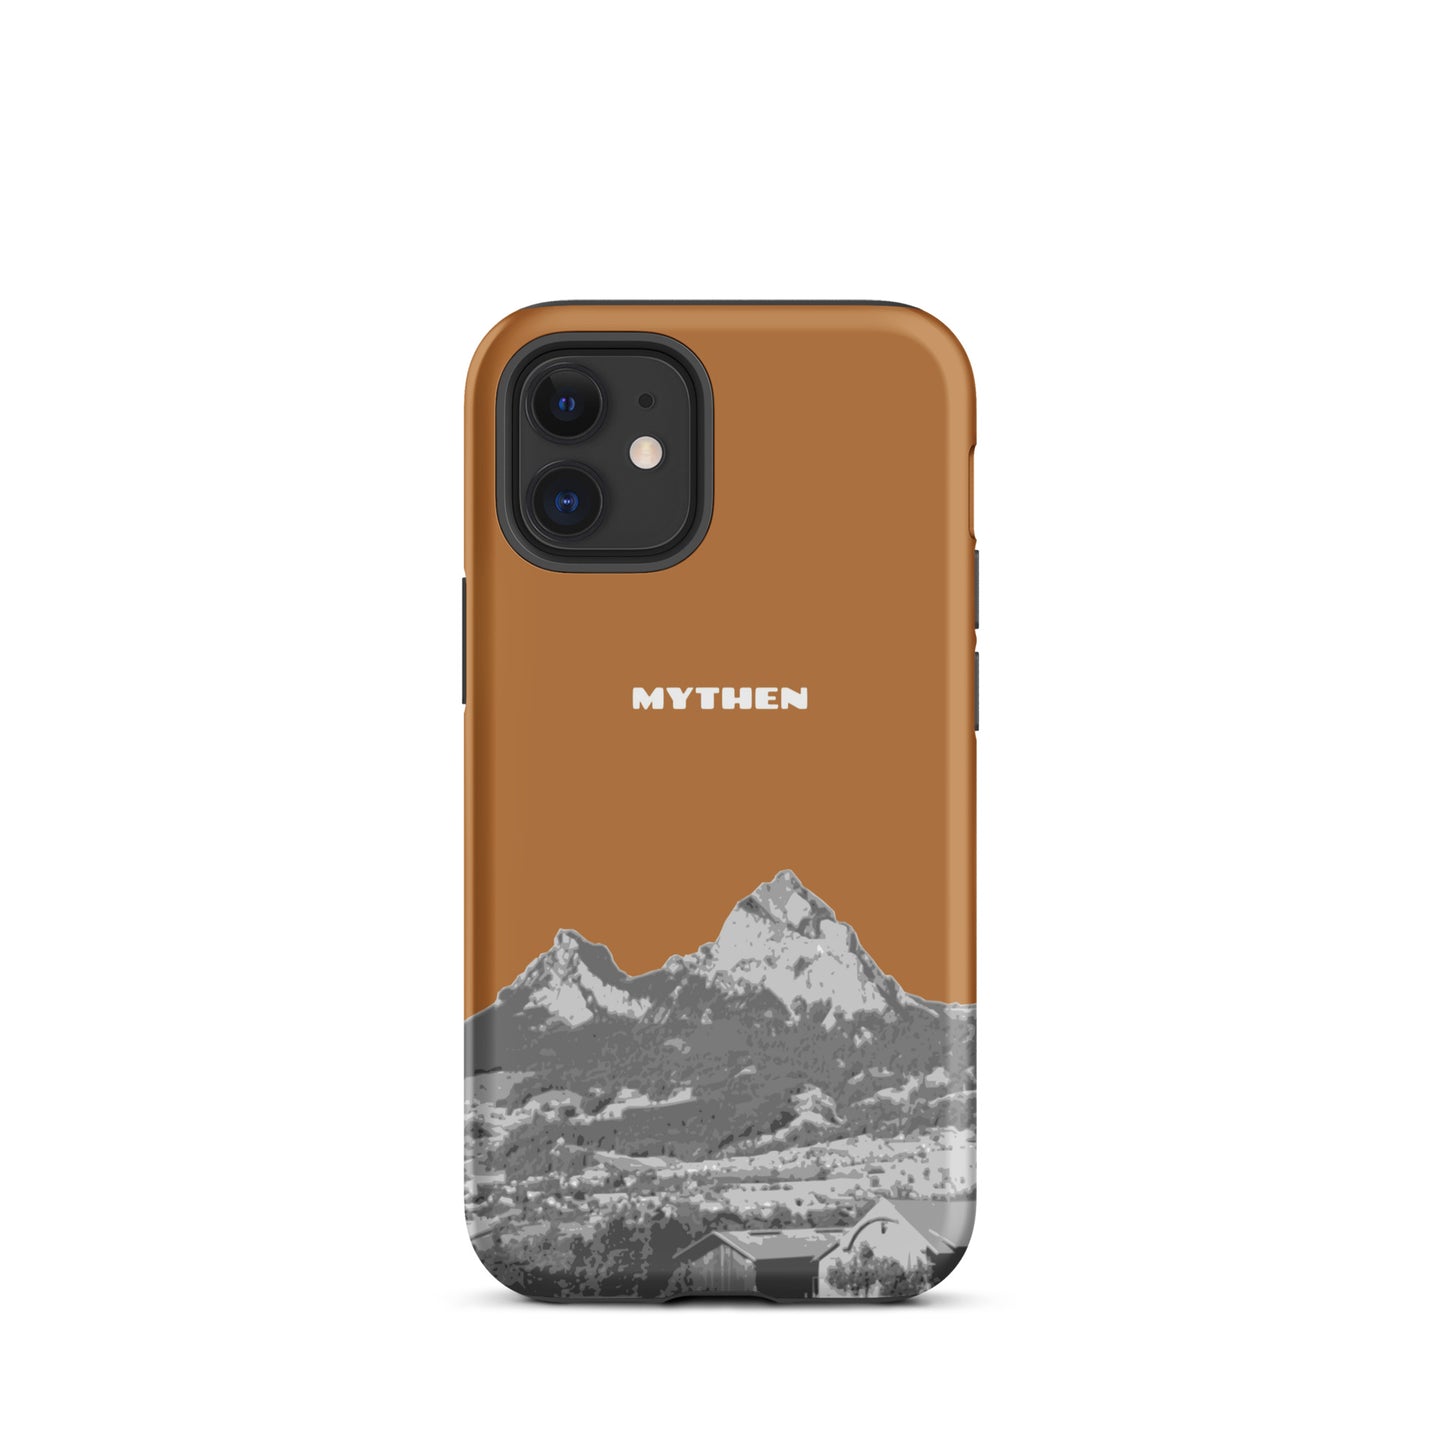 Hülle für das iPhone 12 mini von Apple in der Farbe Kupfer, dass den Grossen Mythen und den Kleinen Mythen bei Schwyz zeigt. 